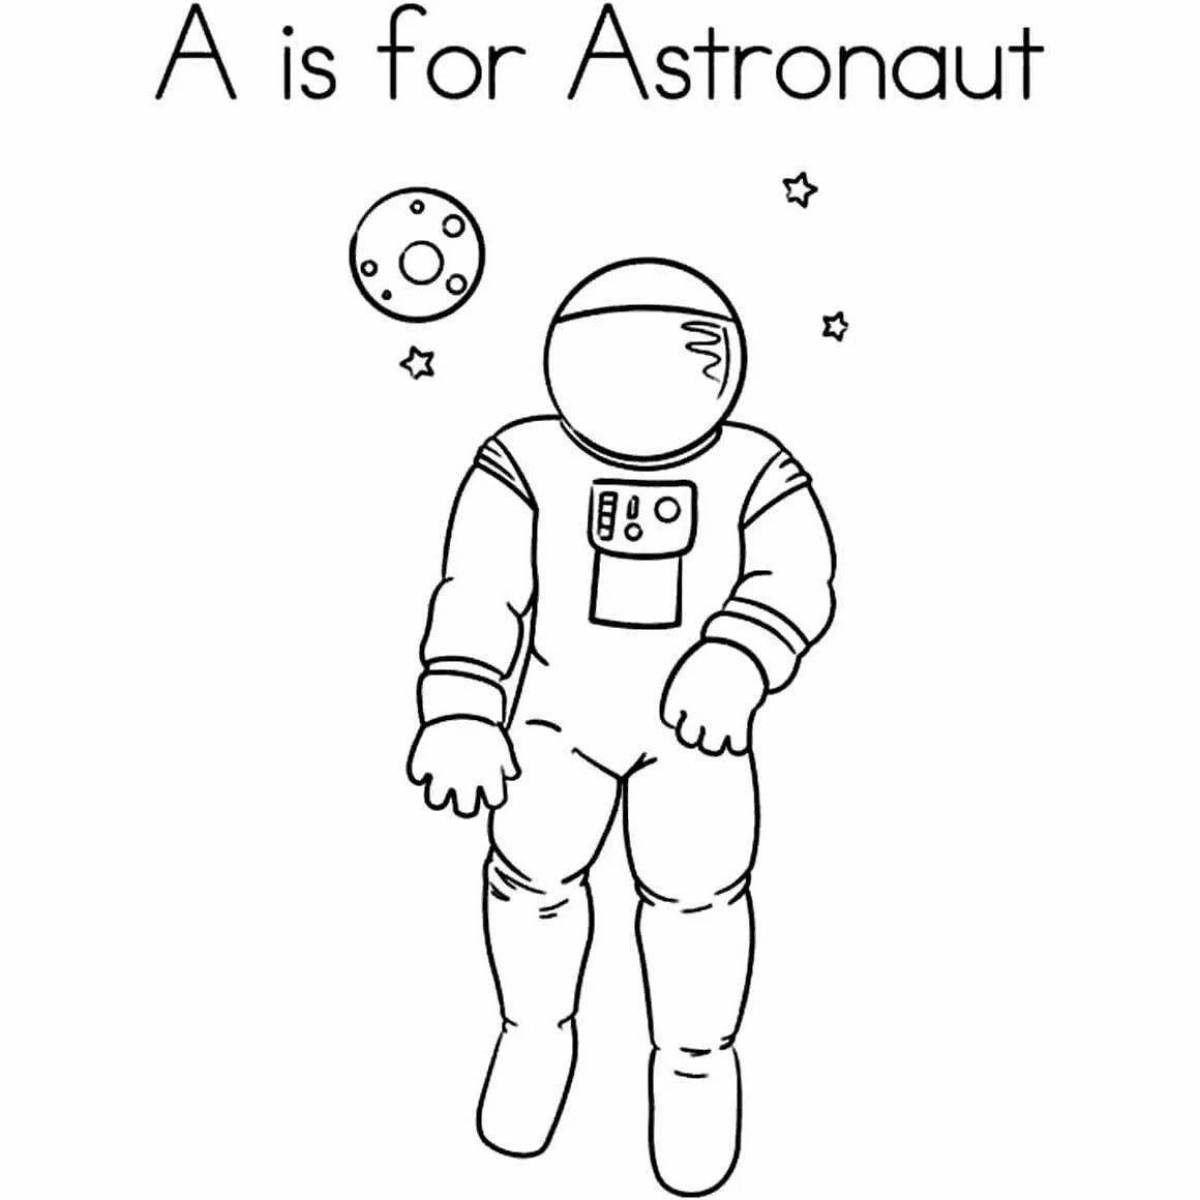 Exquisite space suit astronaut